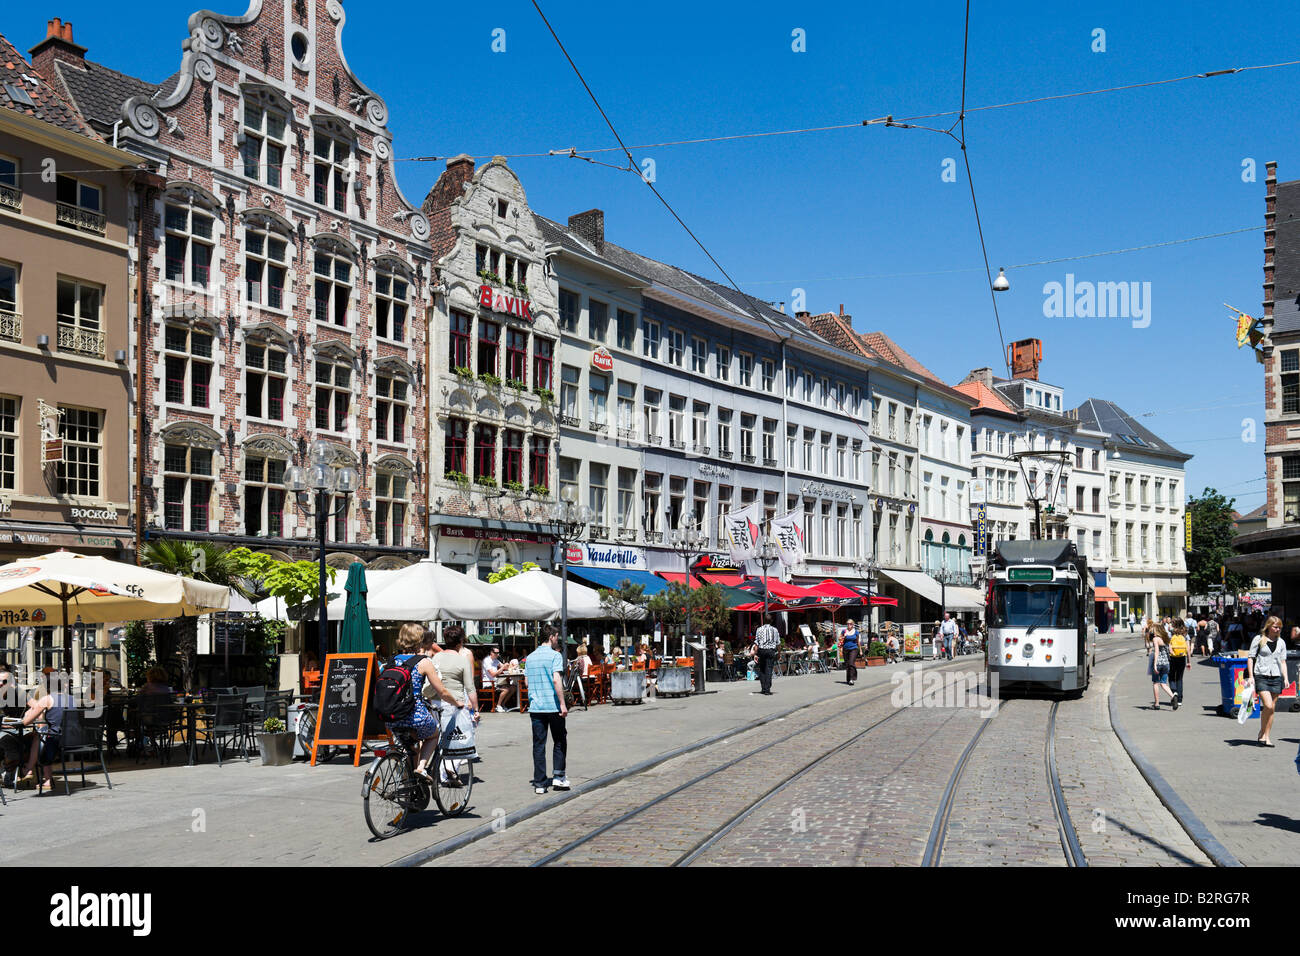 Straßenbahn und Cafe auf der Korenmarkt im historischen Stadtzentrum, Gent, Belgien Stockfoto